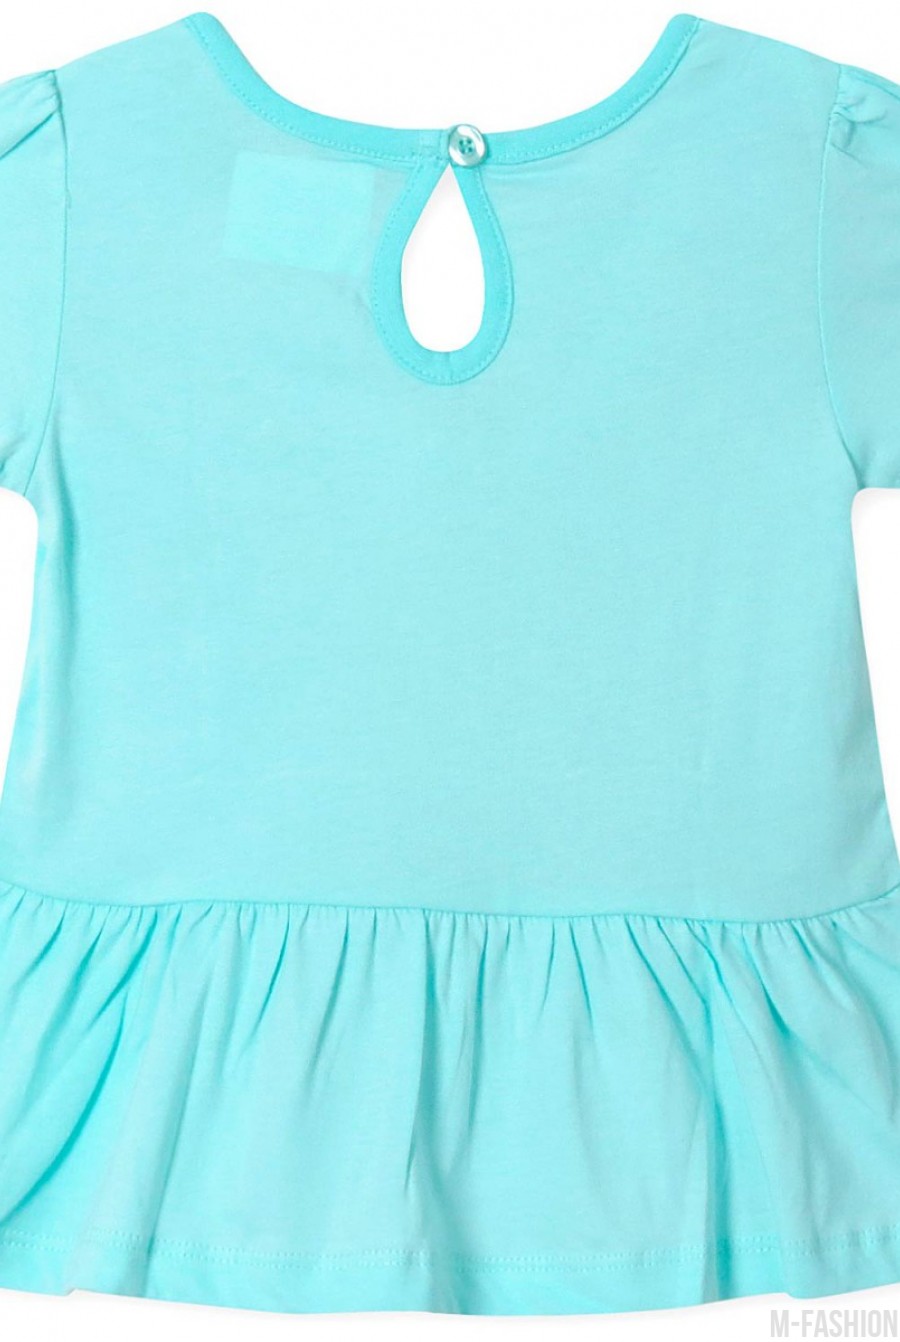 Голубая котоновая футболка с аппликацией, воланом по подолу и пуговицей на спине- Фото 3